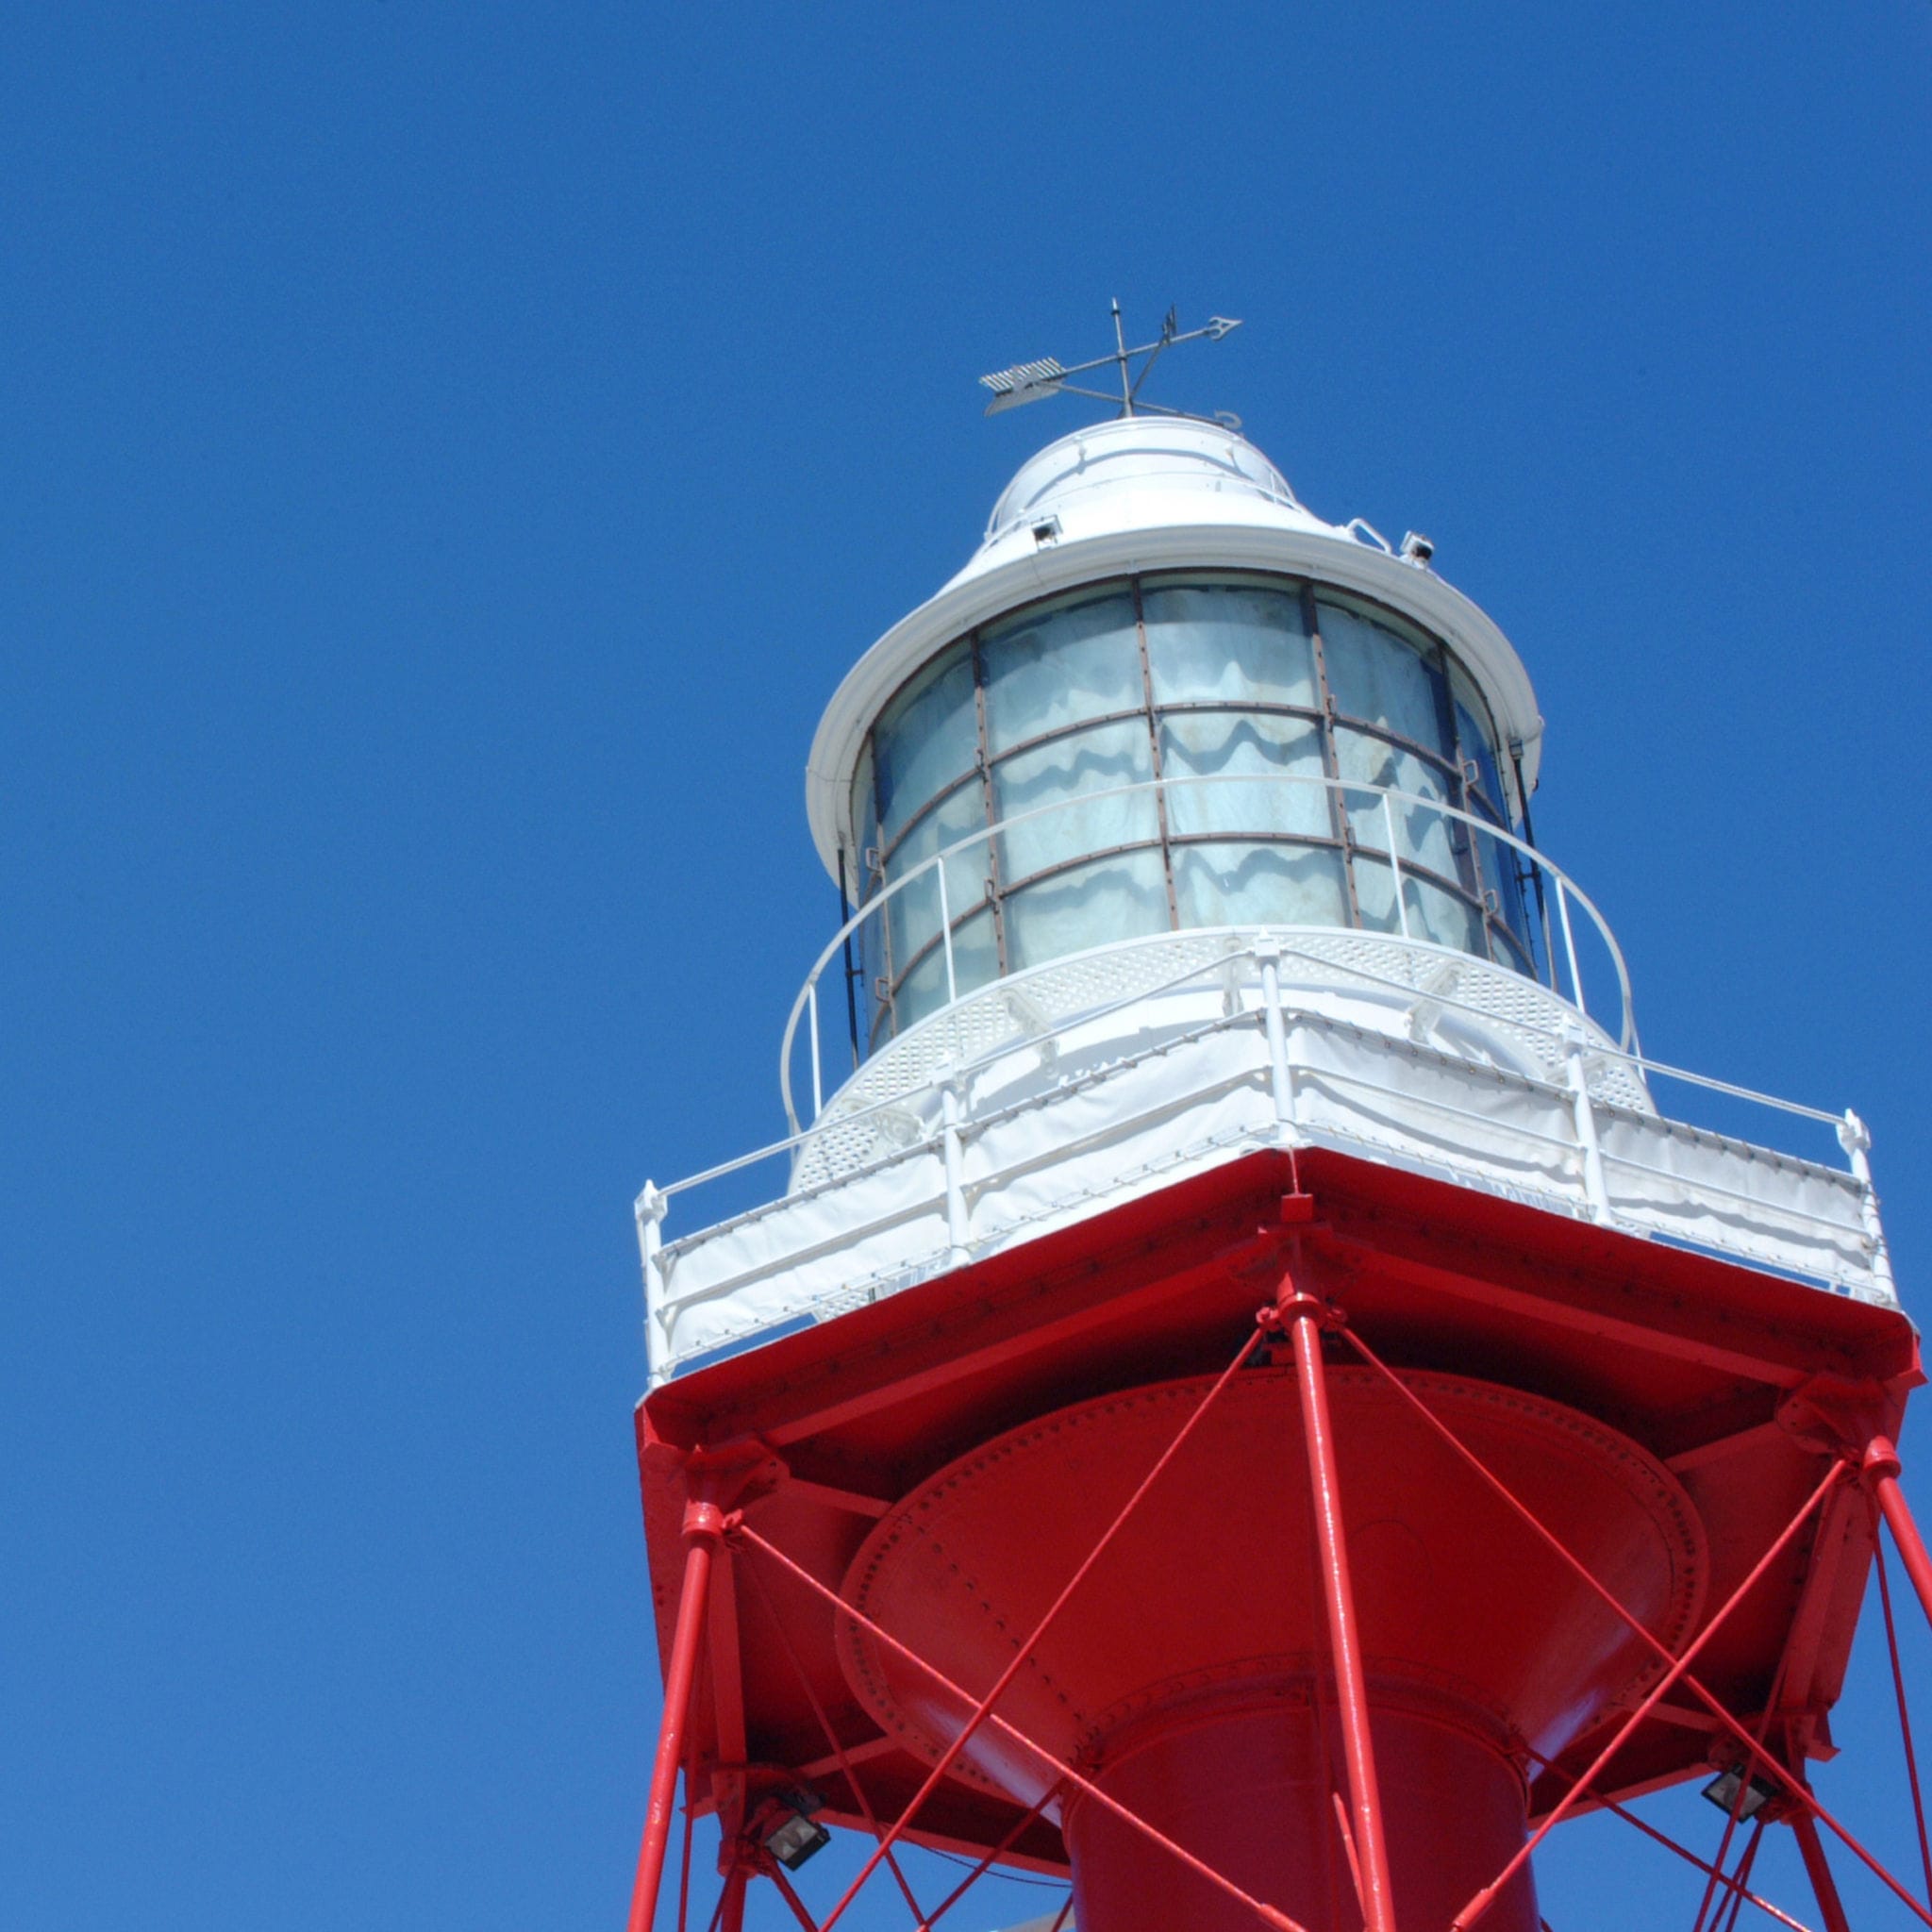 Adelaide, Australia - February 06, 2002: Port Adelaide red lighthouse